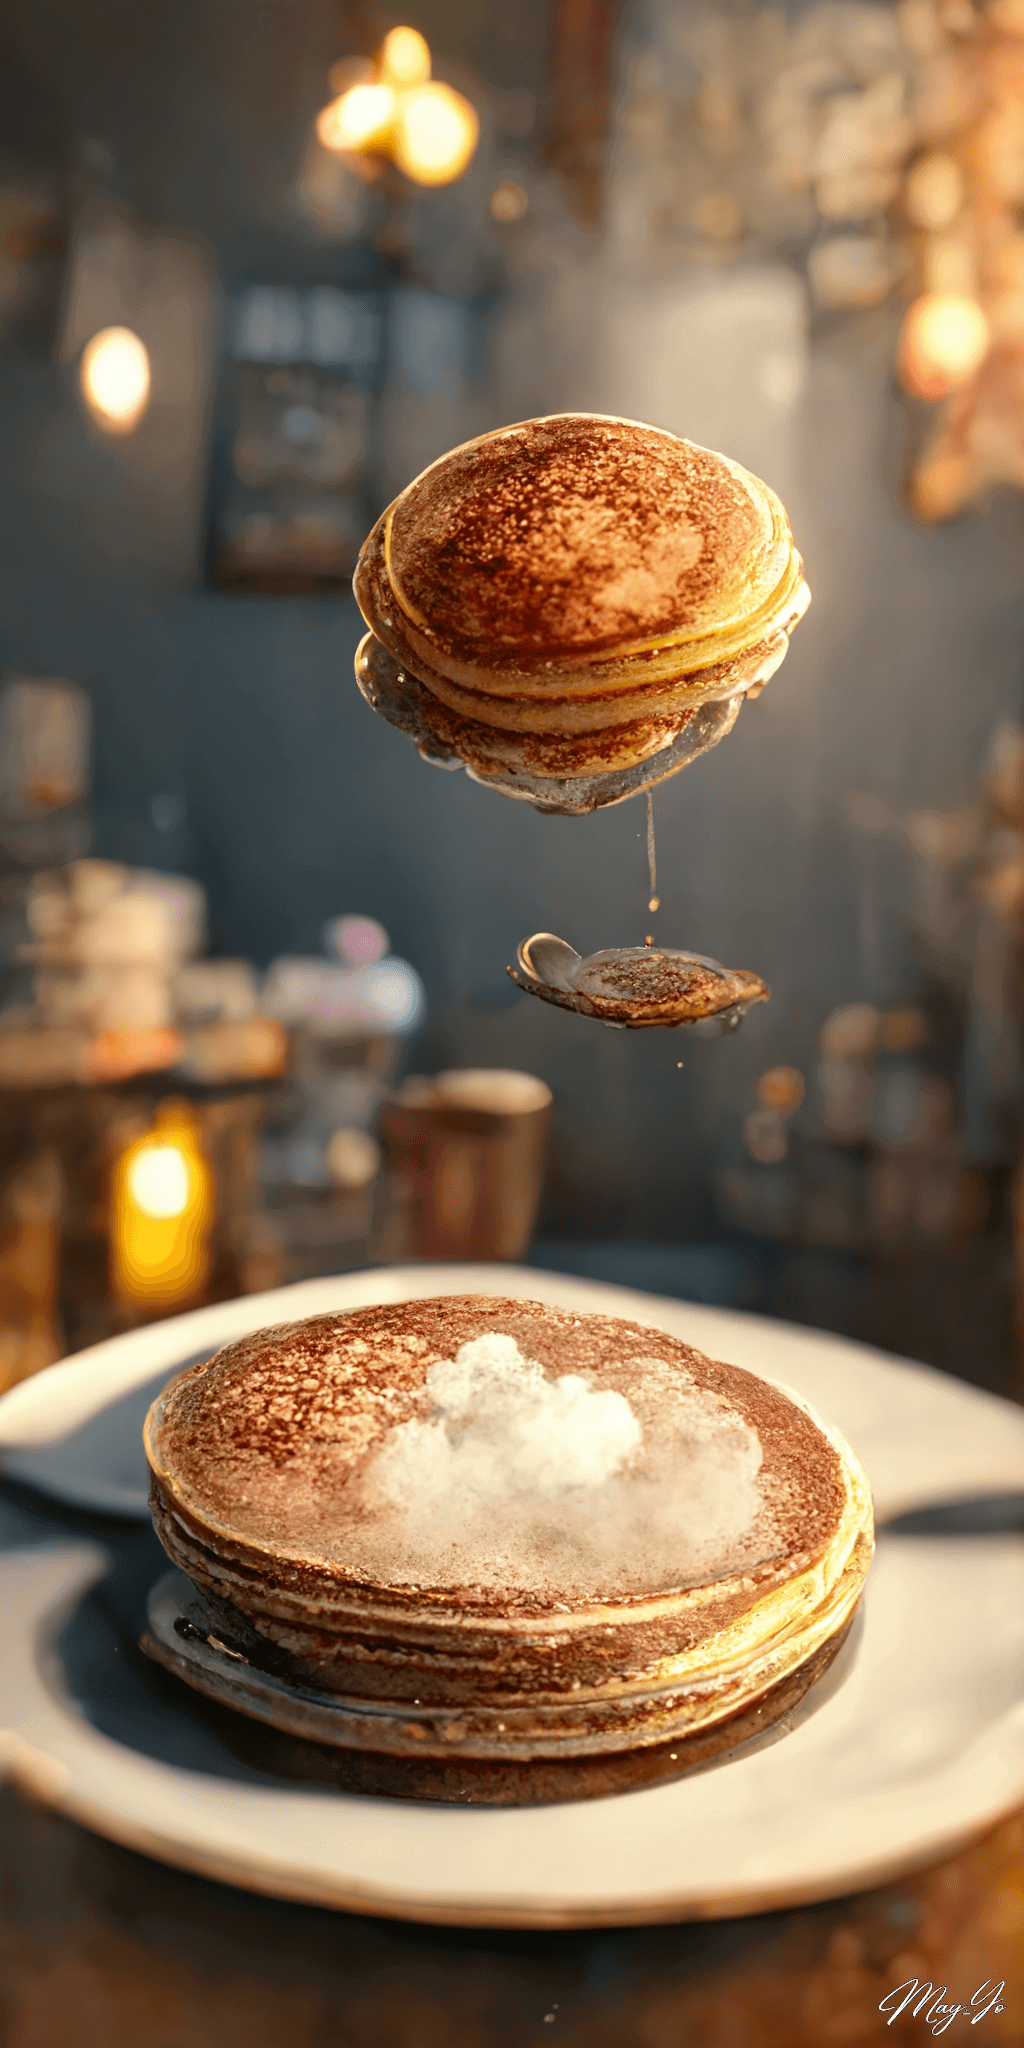 空飛ぶパンケーキの壁紙イラスト メープルシロップ付きの浮遊するパンケーキの待受 AIイラスト待受 縦長画像 pancake illustration fiction art